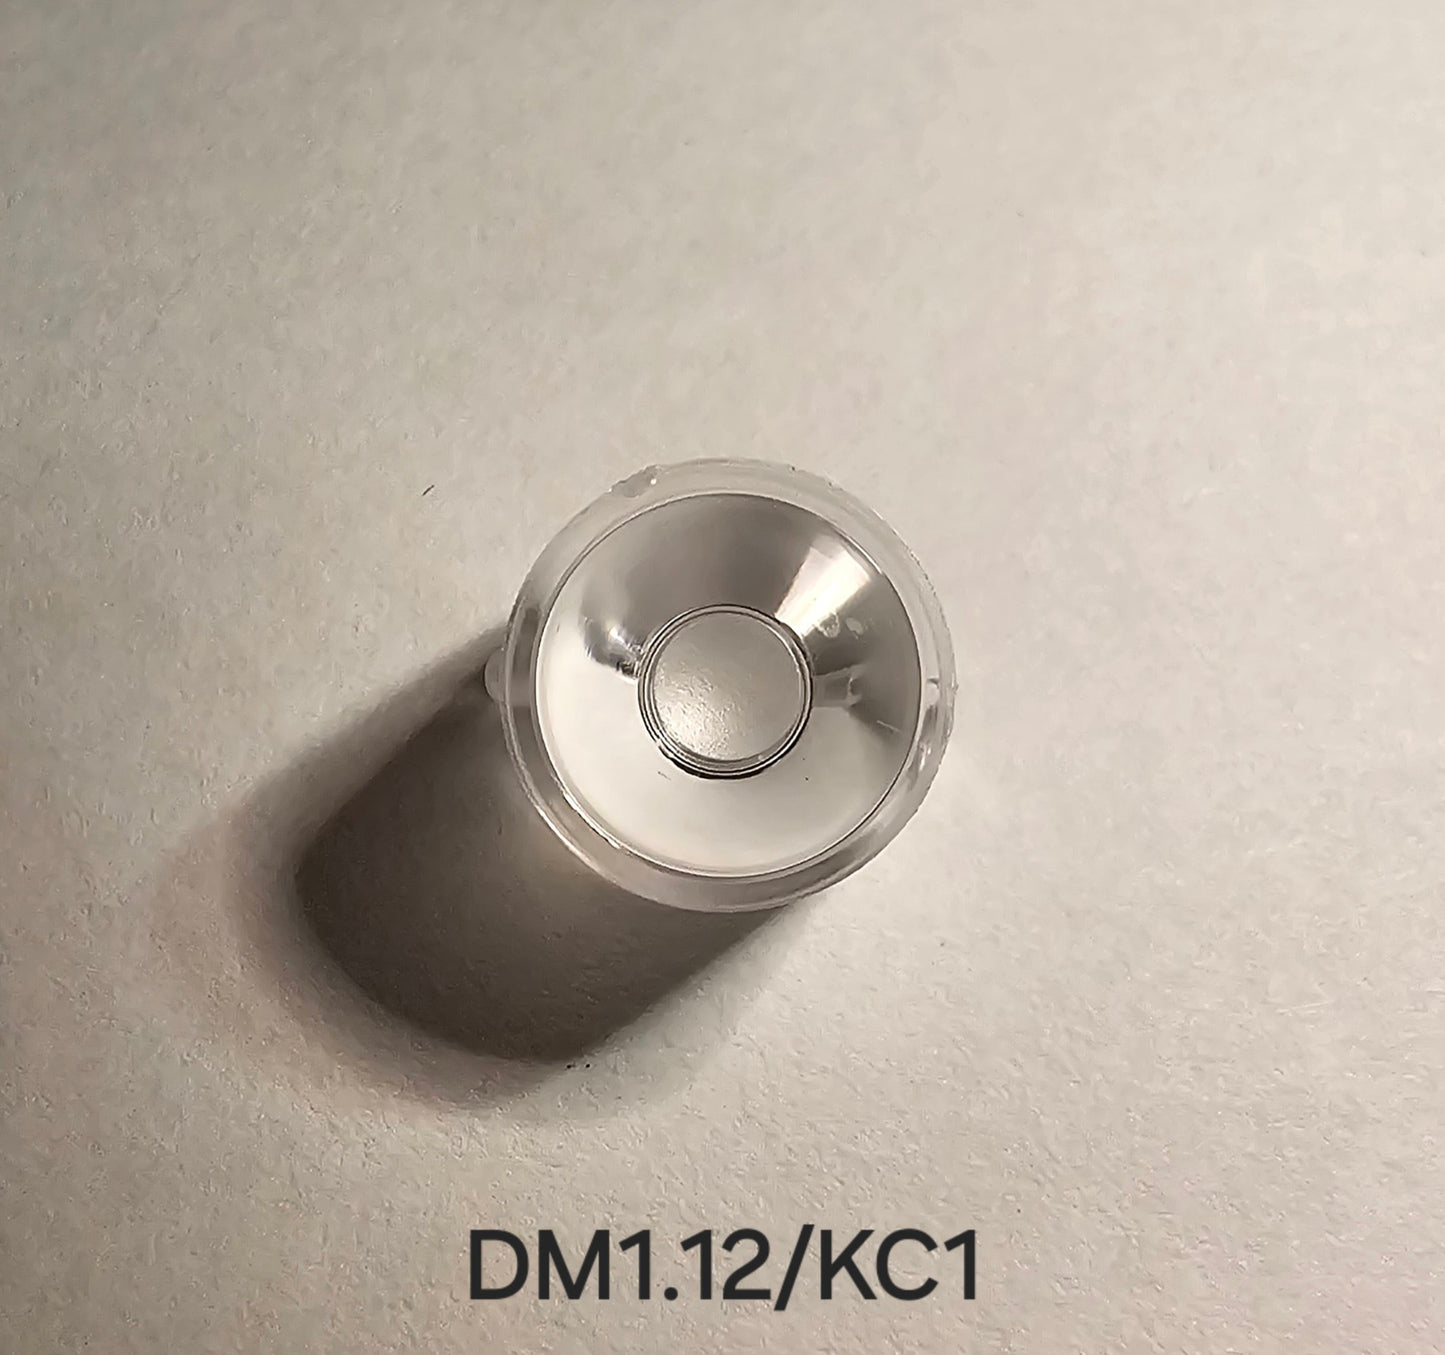 Emisar/Noctigon Replacement Glass TIR Optics LEDIL DM1.12/KC1 SPOT OPTICS